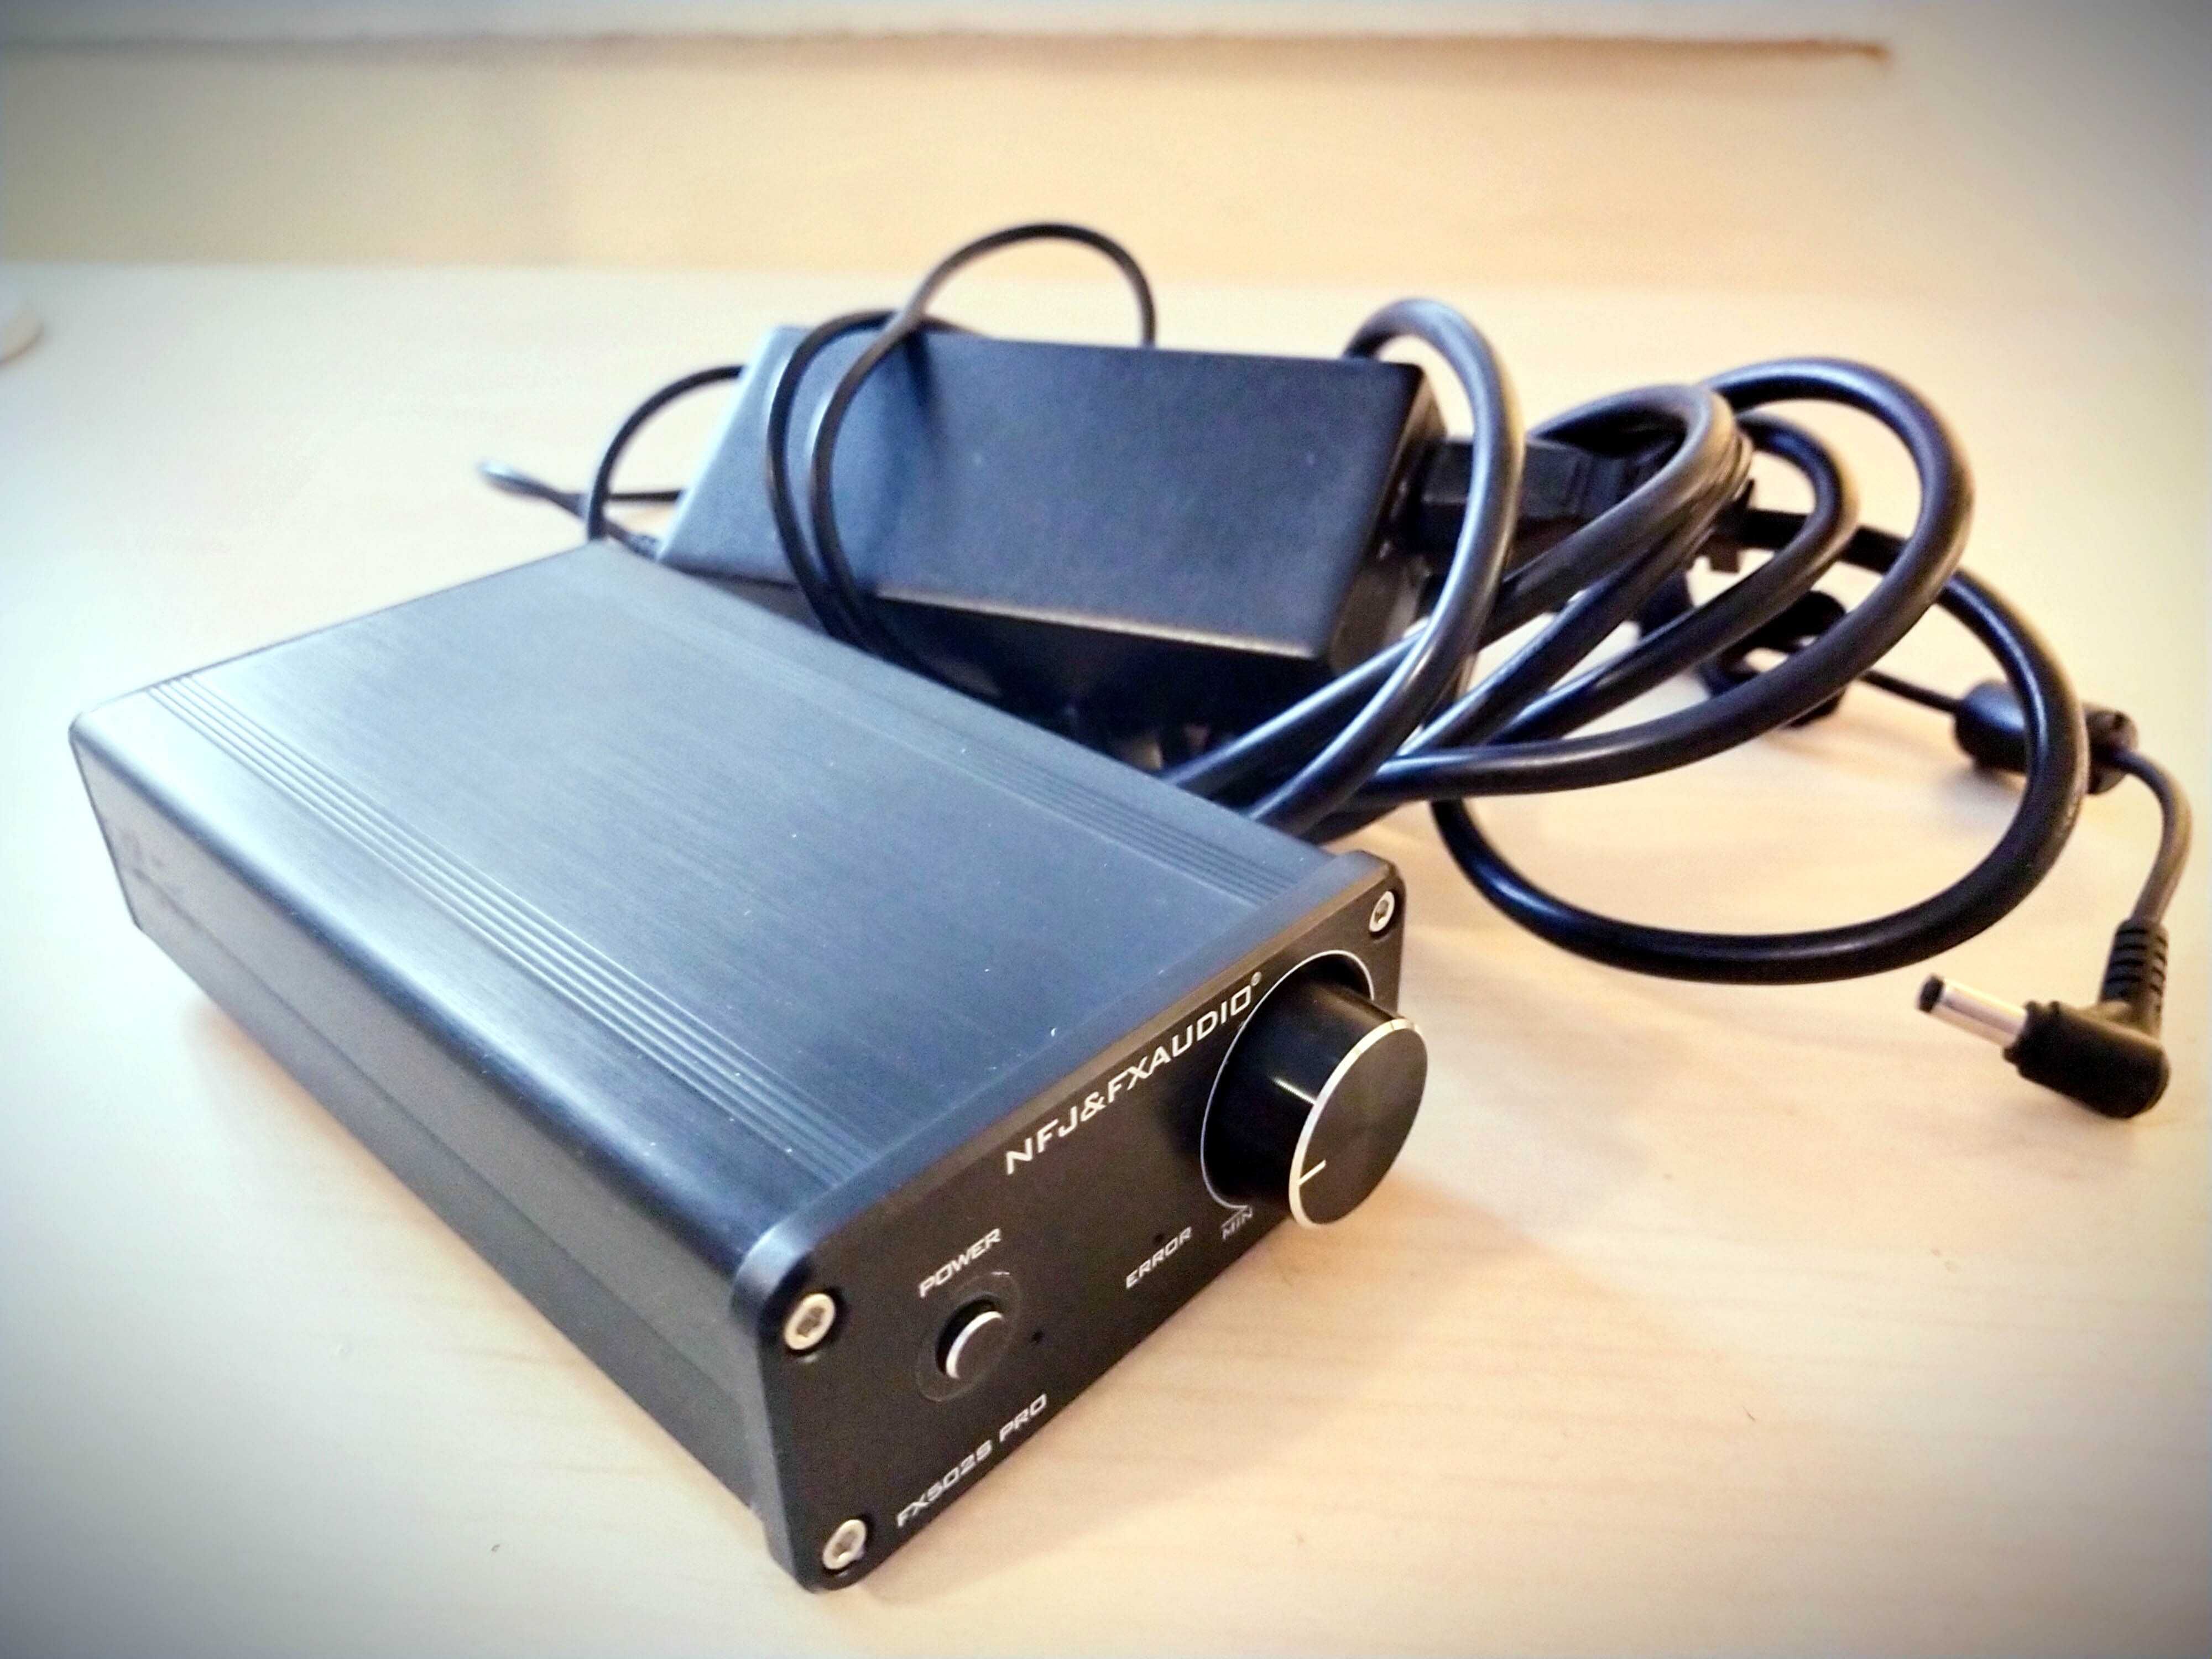 Wzmacniacz FXAudio 502S Pro z zasilaczem